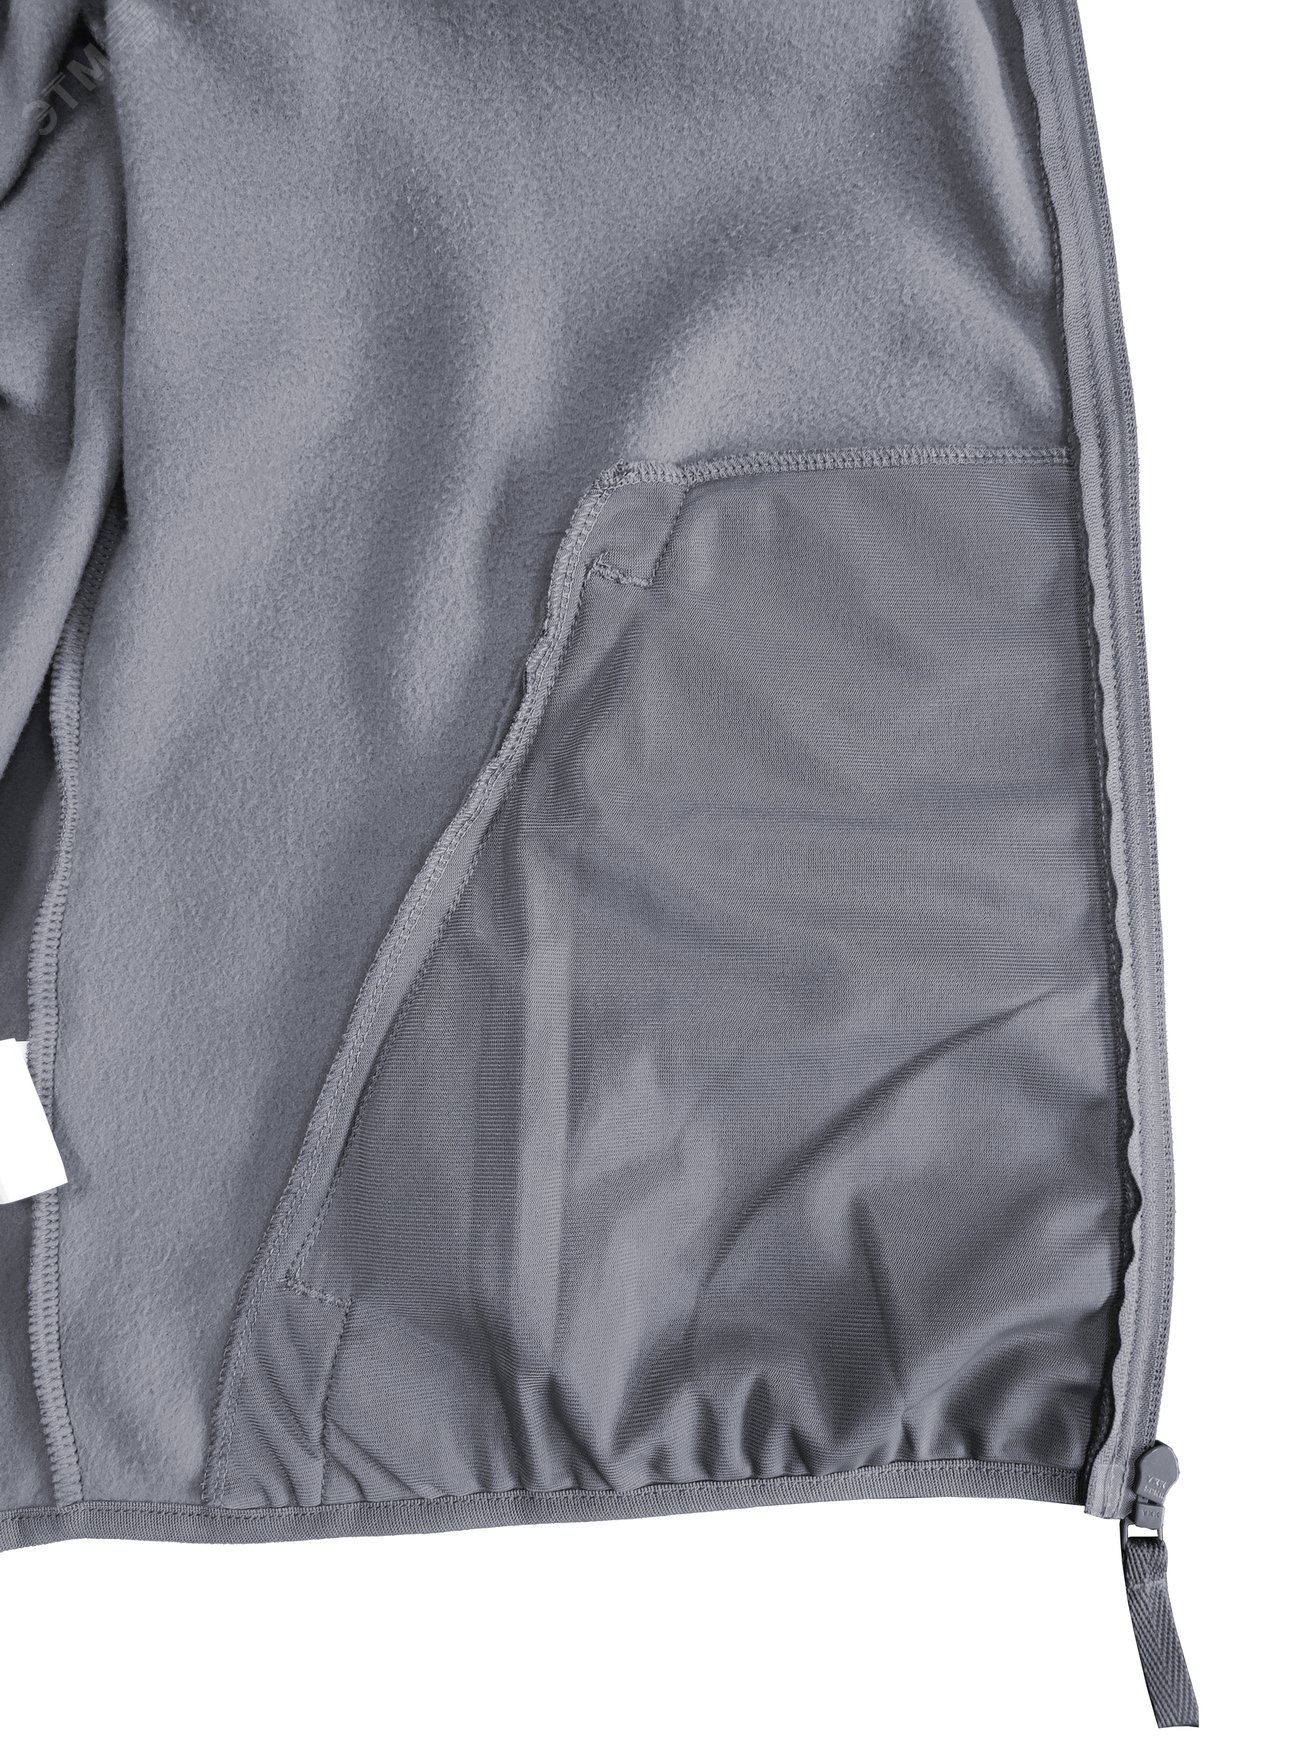 Куртка флисовая арт. JF-01 на молнии цв. серый 48-50 р. M 142302 Эталон-Спецодежда - превью 10